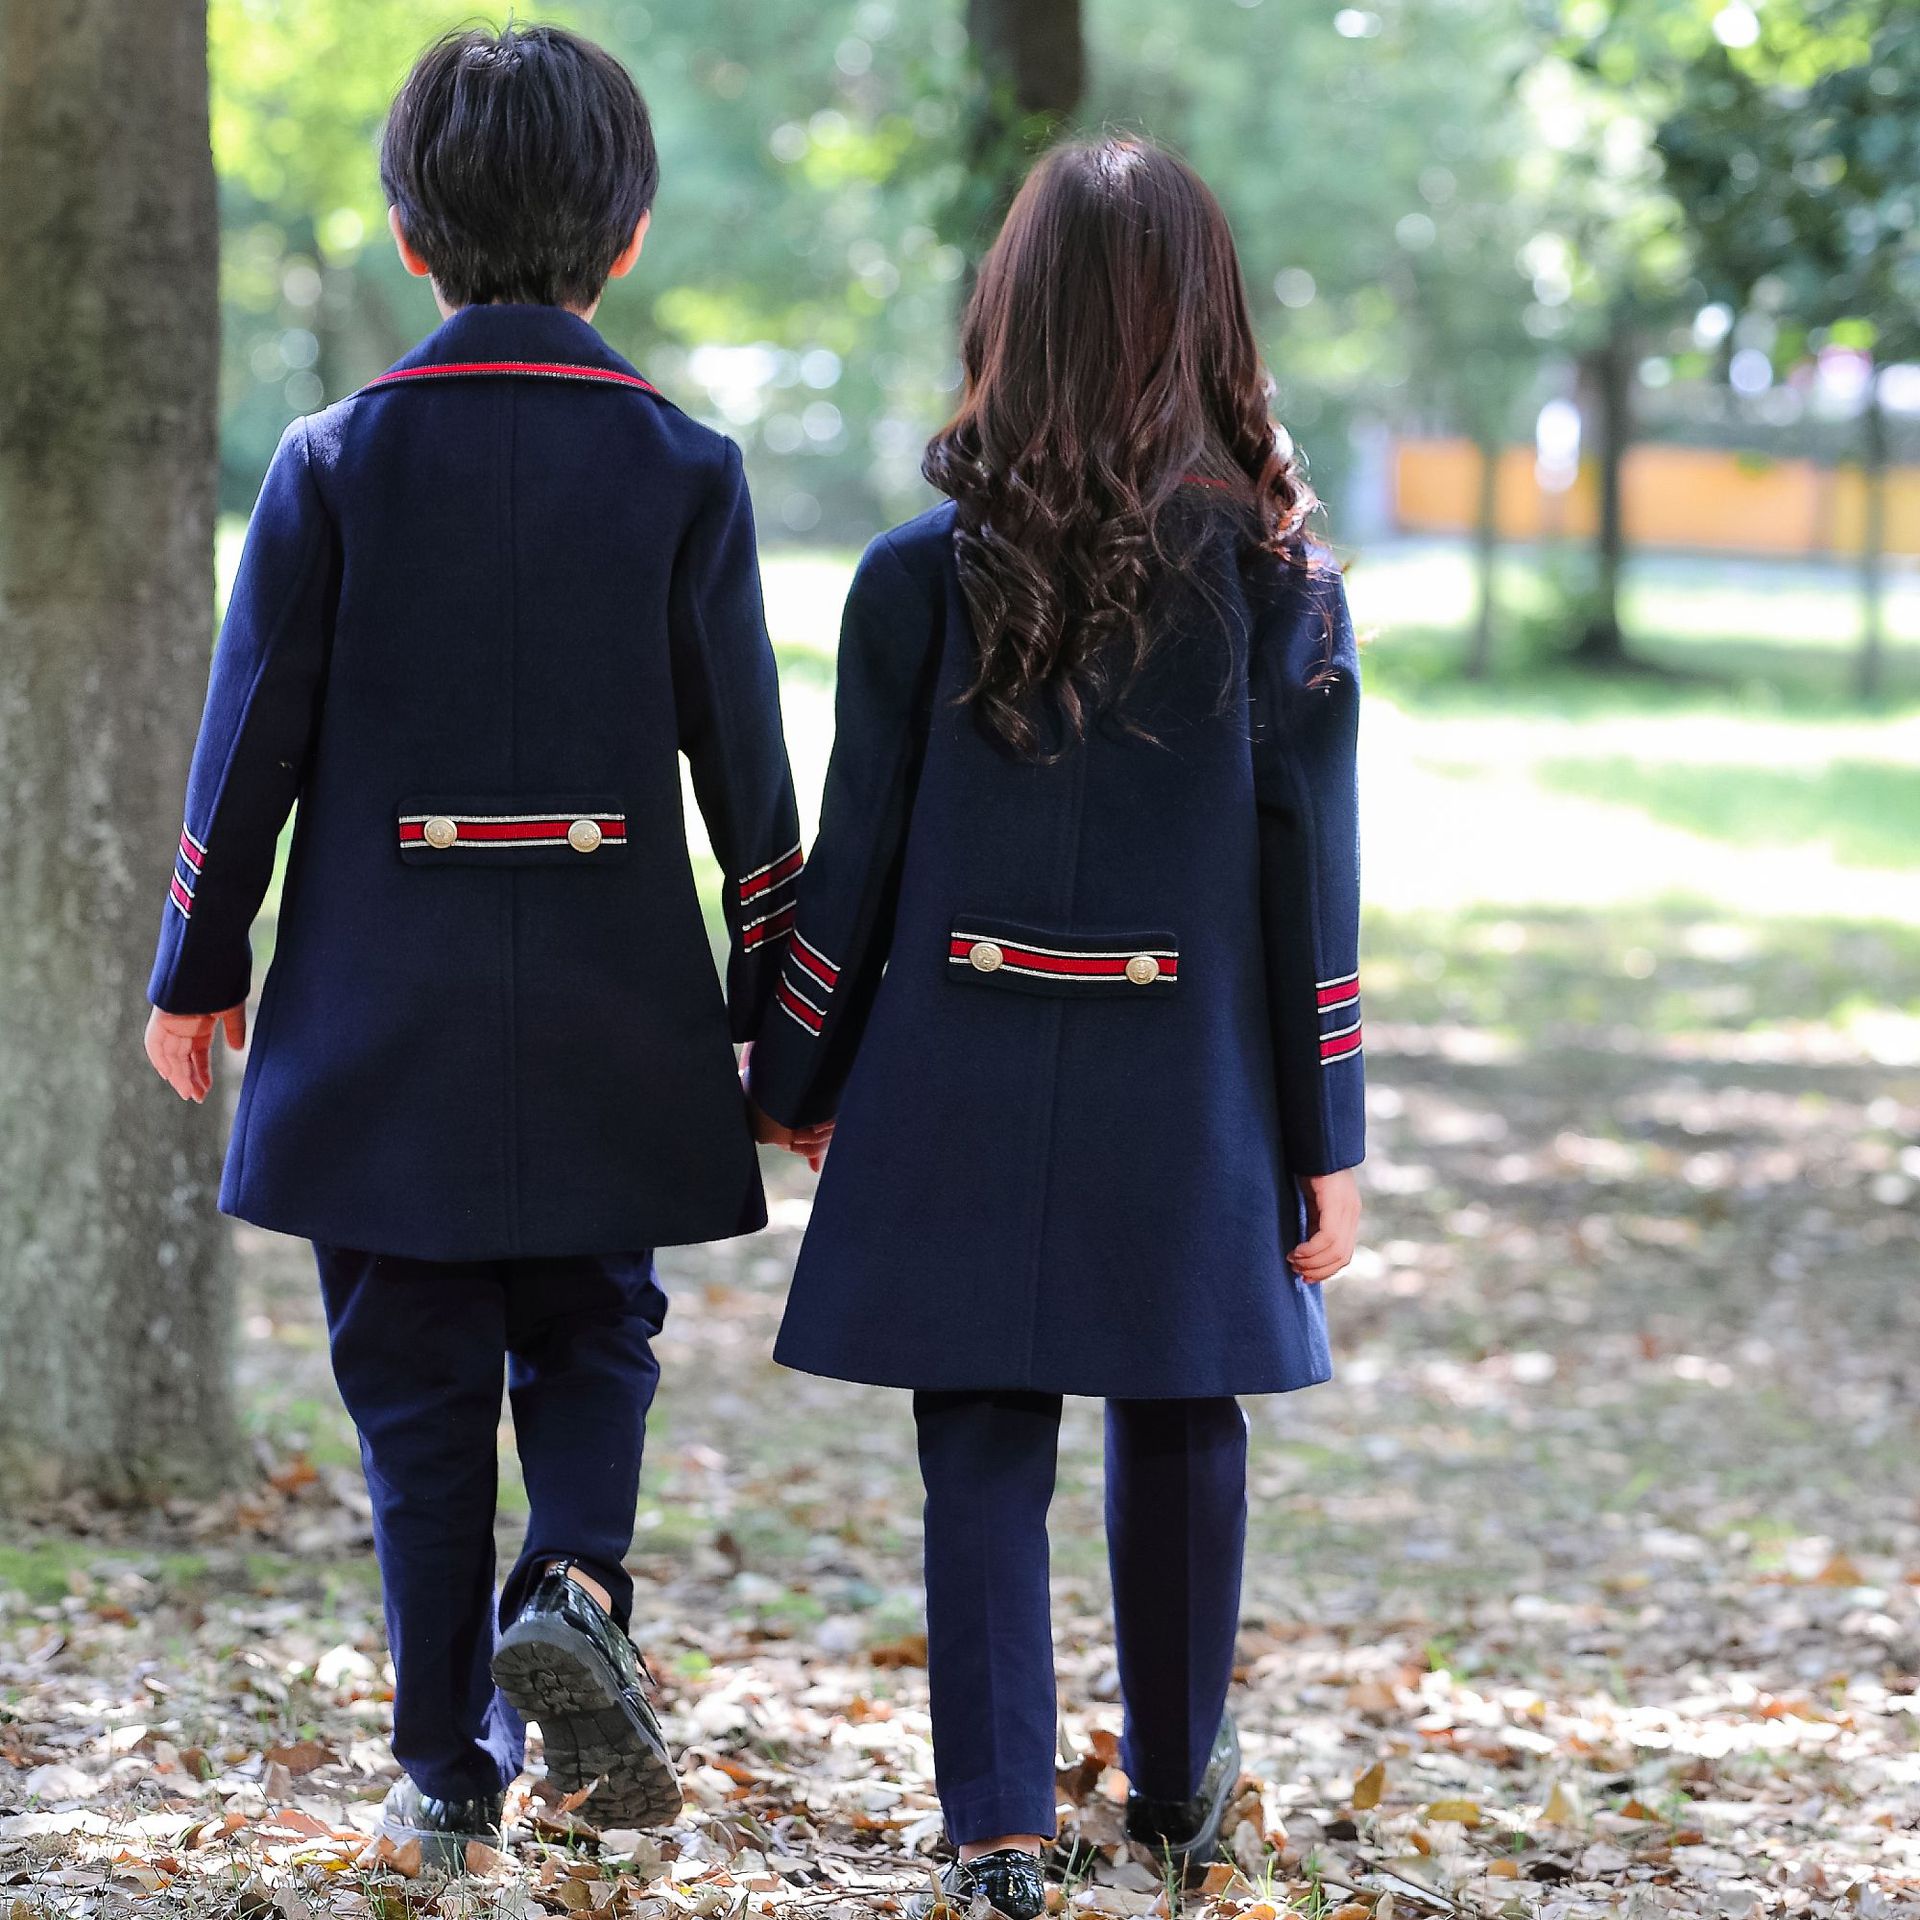 Uniforme de jardín de infantes de Corea del Sur, abrigo de uniforme de estudiante de invierno negro de manga larga con doble botonadura 